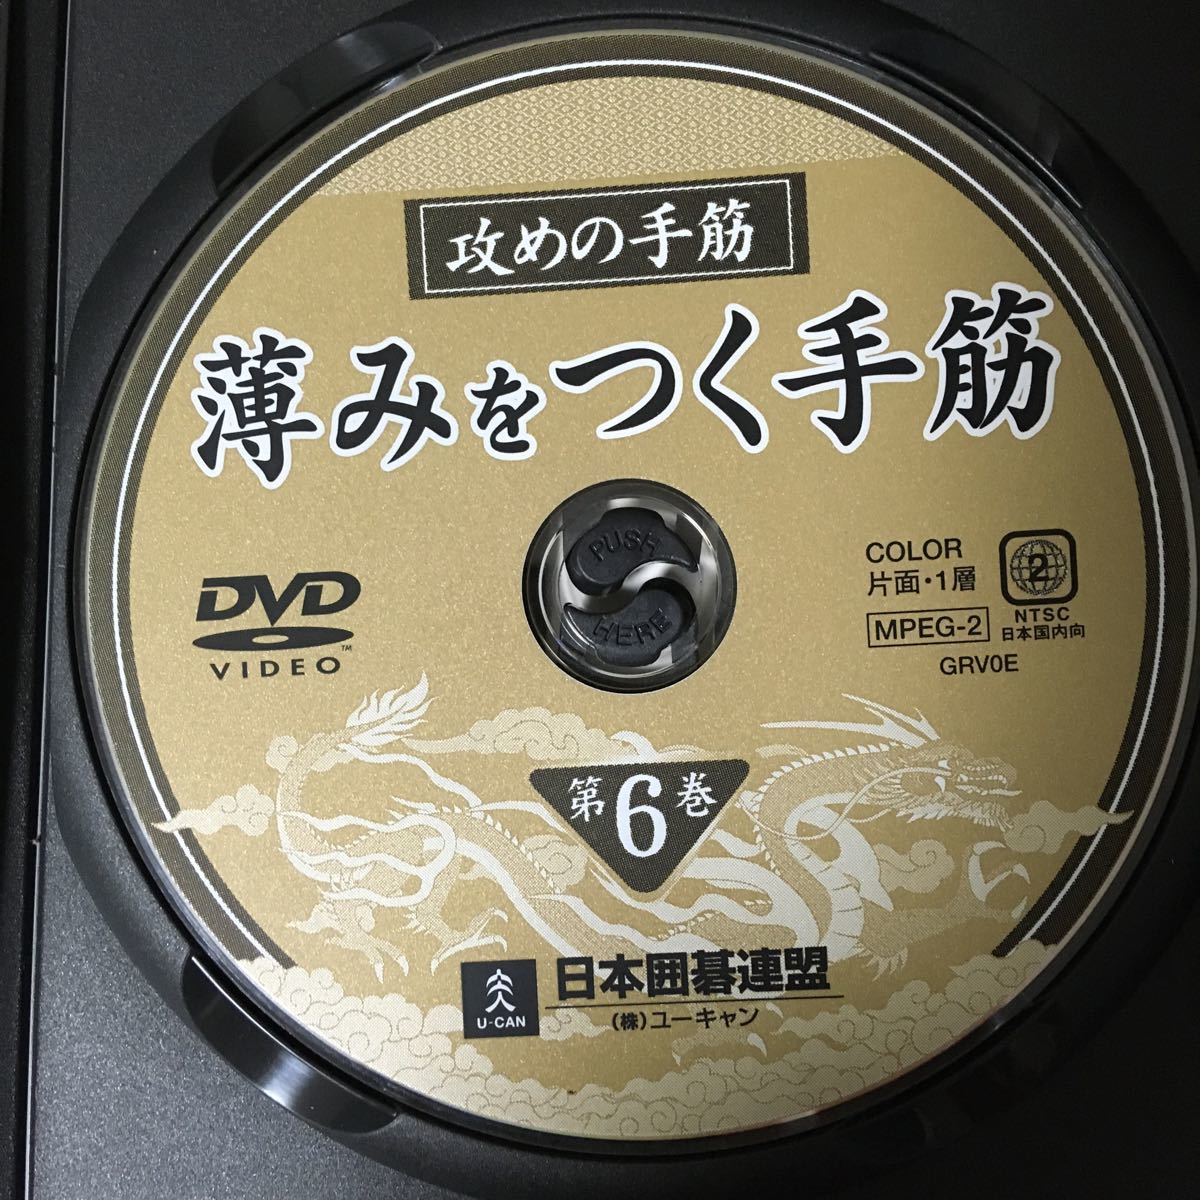 囲碁DVD 日本囲碁連盟 泉谷英雄 攻めの手筋 DVD6枚組 解説書付属